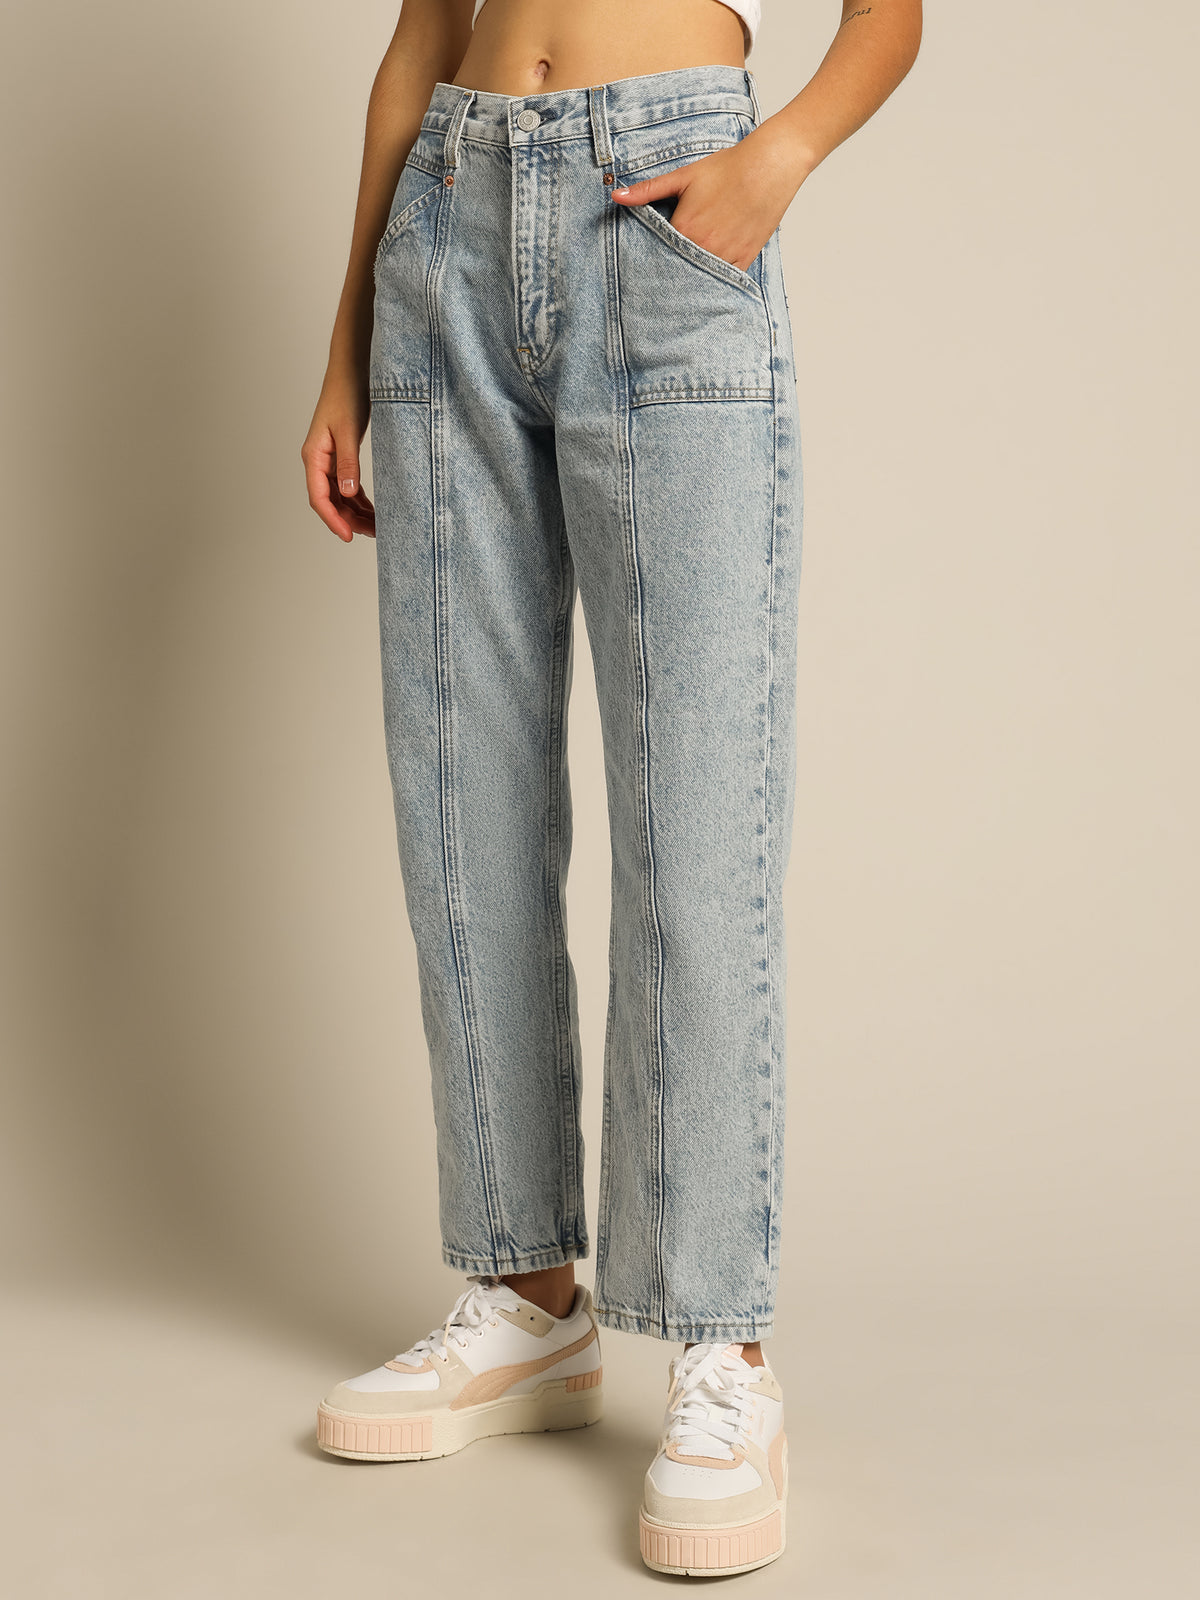 Harper High Rise Straight Jeans in Light Denim